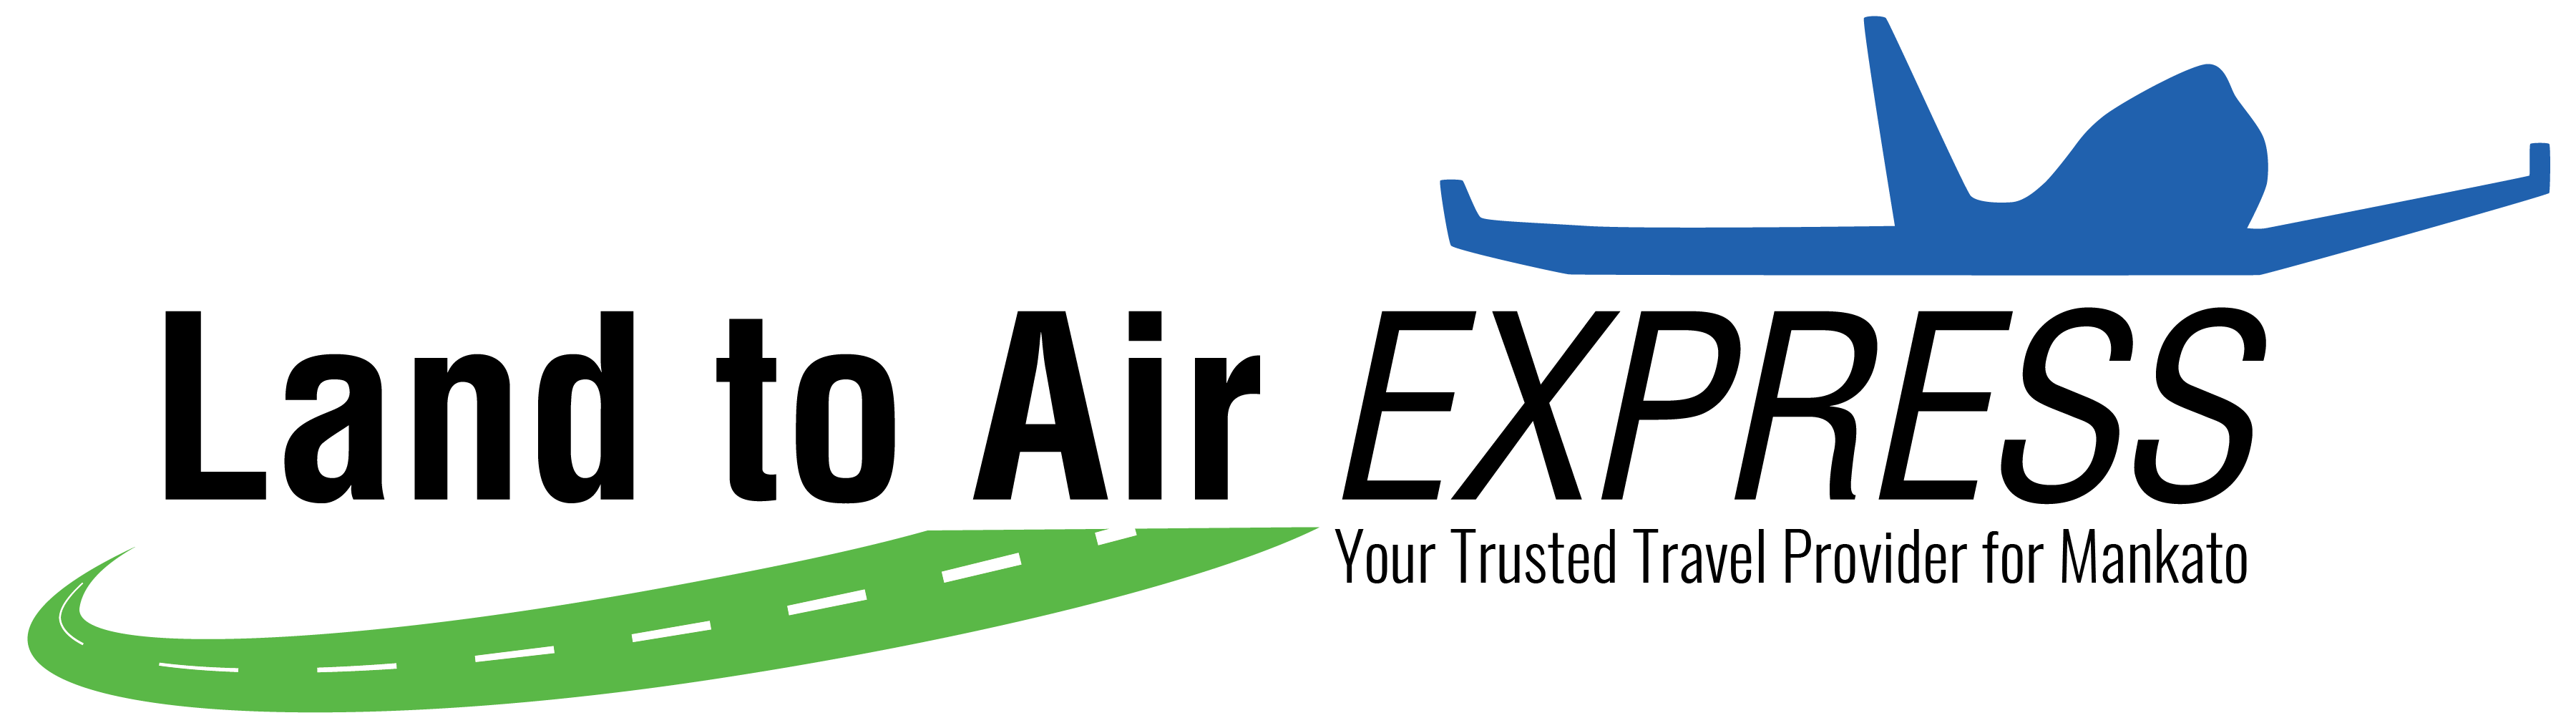 Land to Air Express Logo